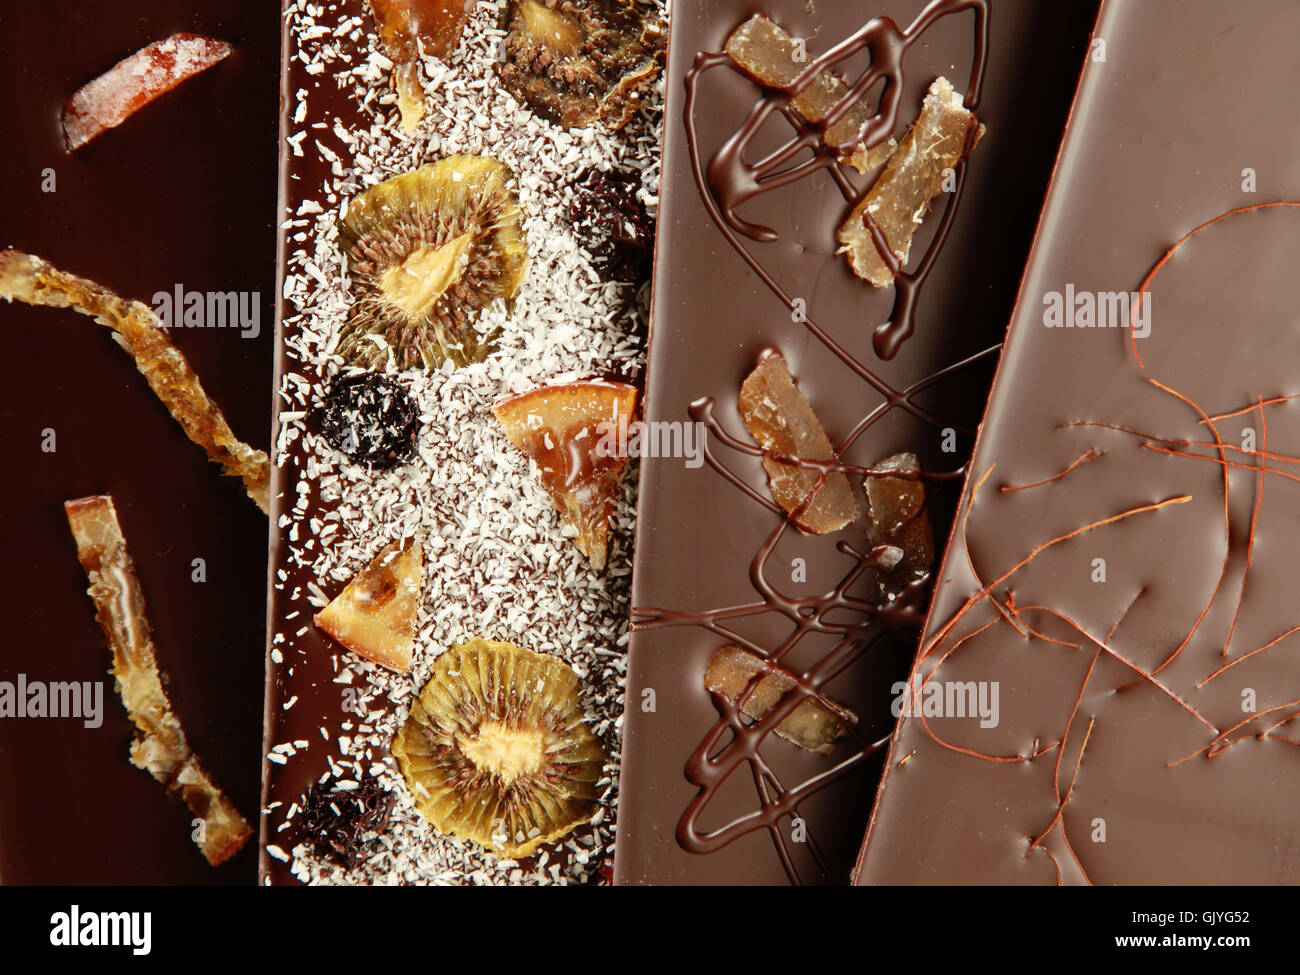 progenies fruits cocoa Stock Photo